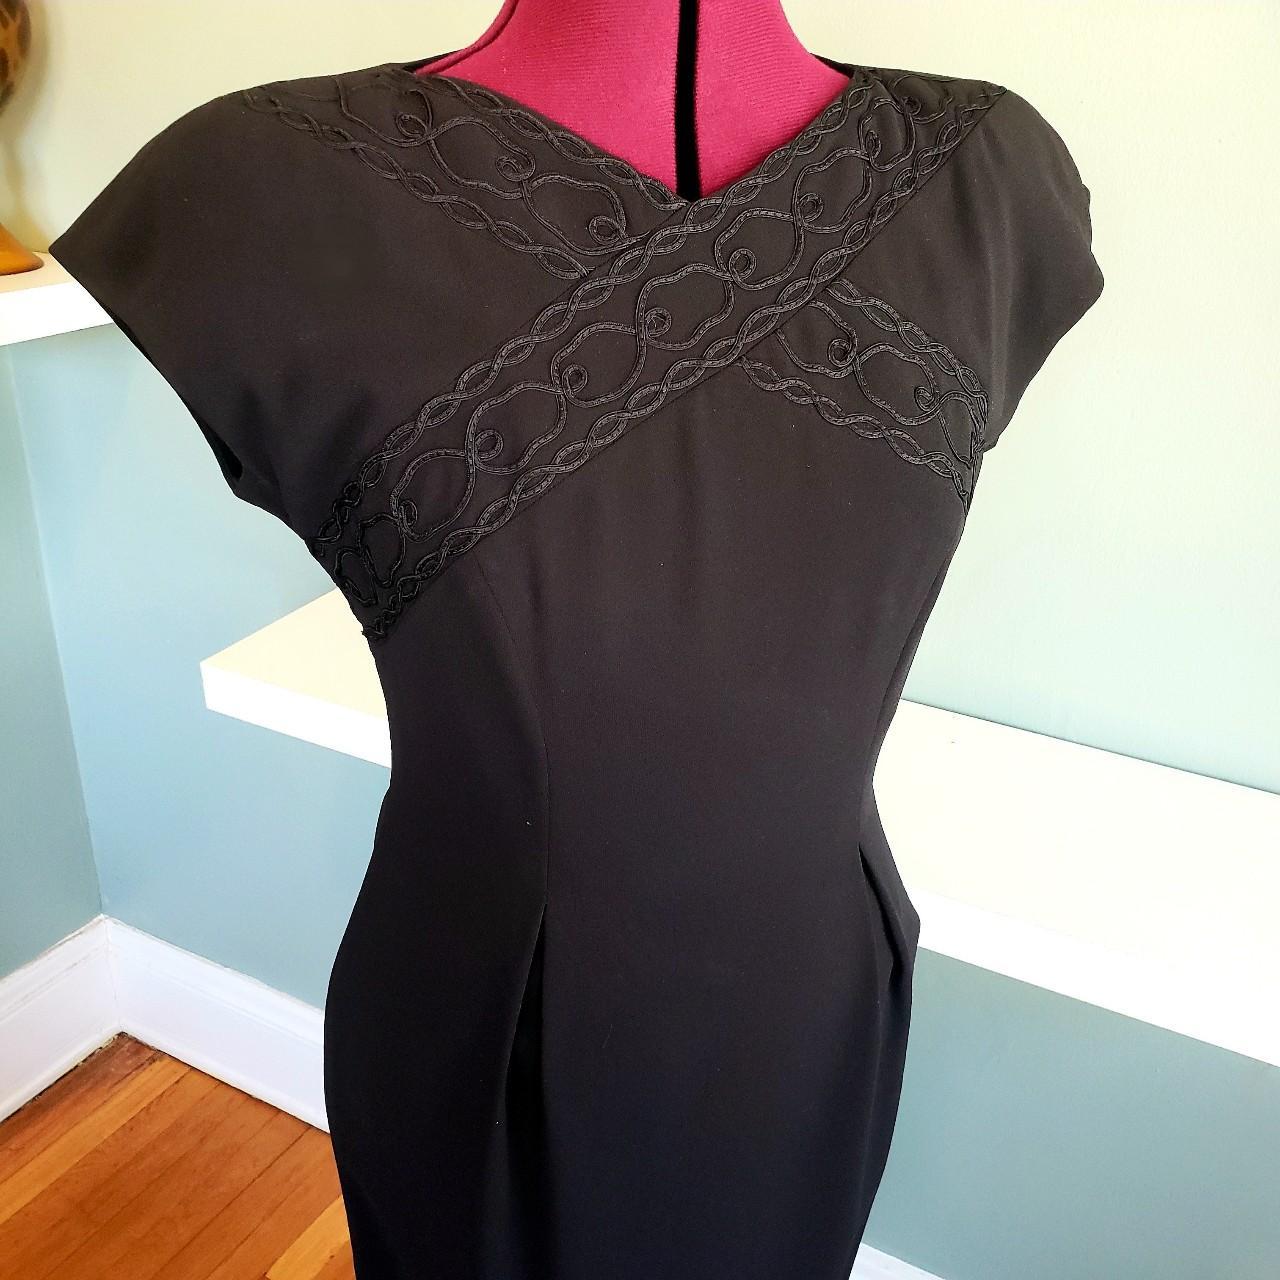 Product Image 1 - 90s Vintage Liz Claiborne Dress

Size